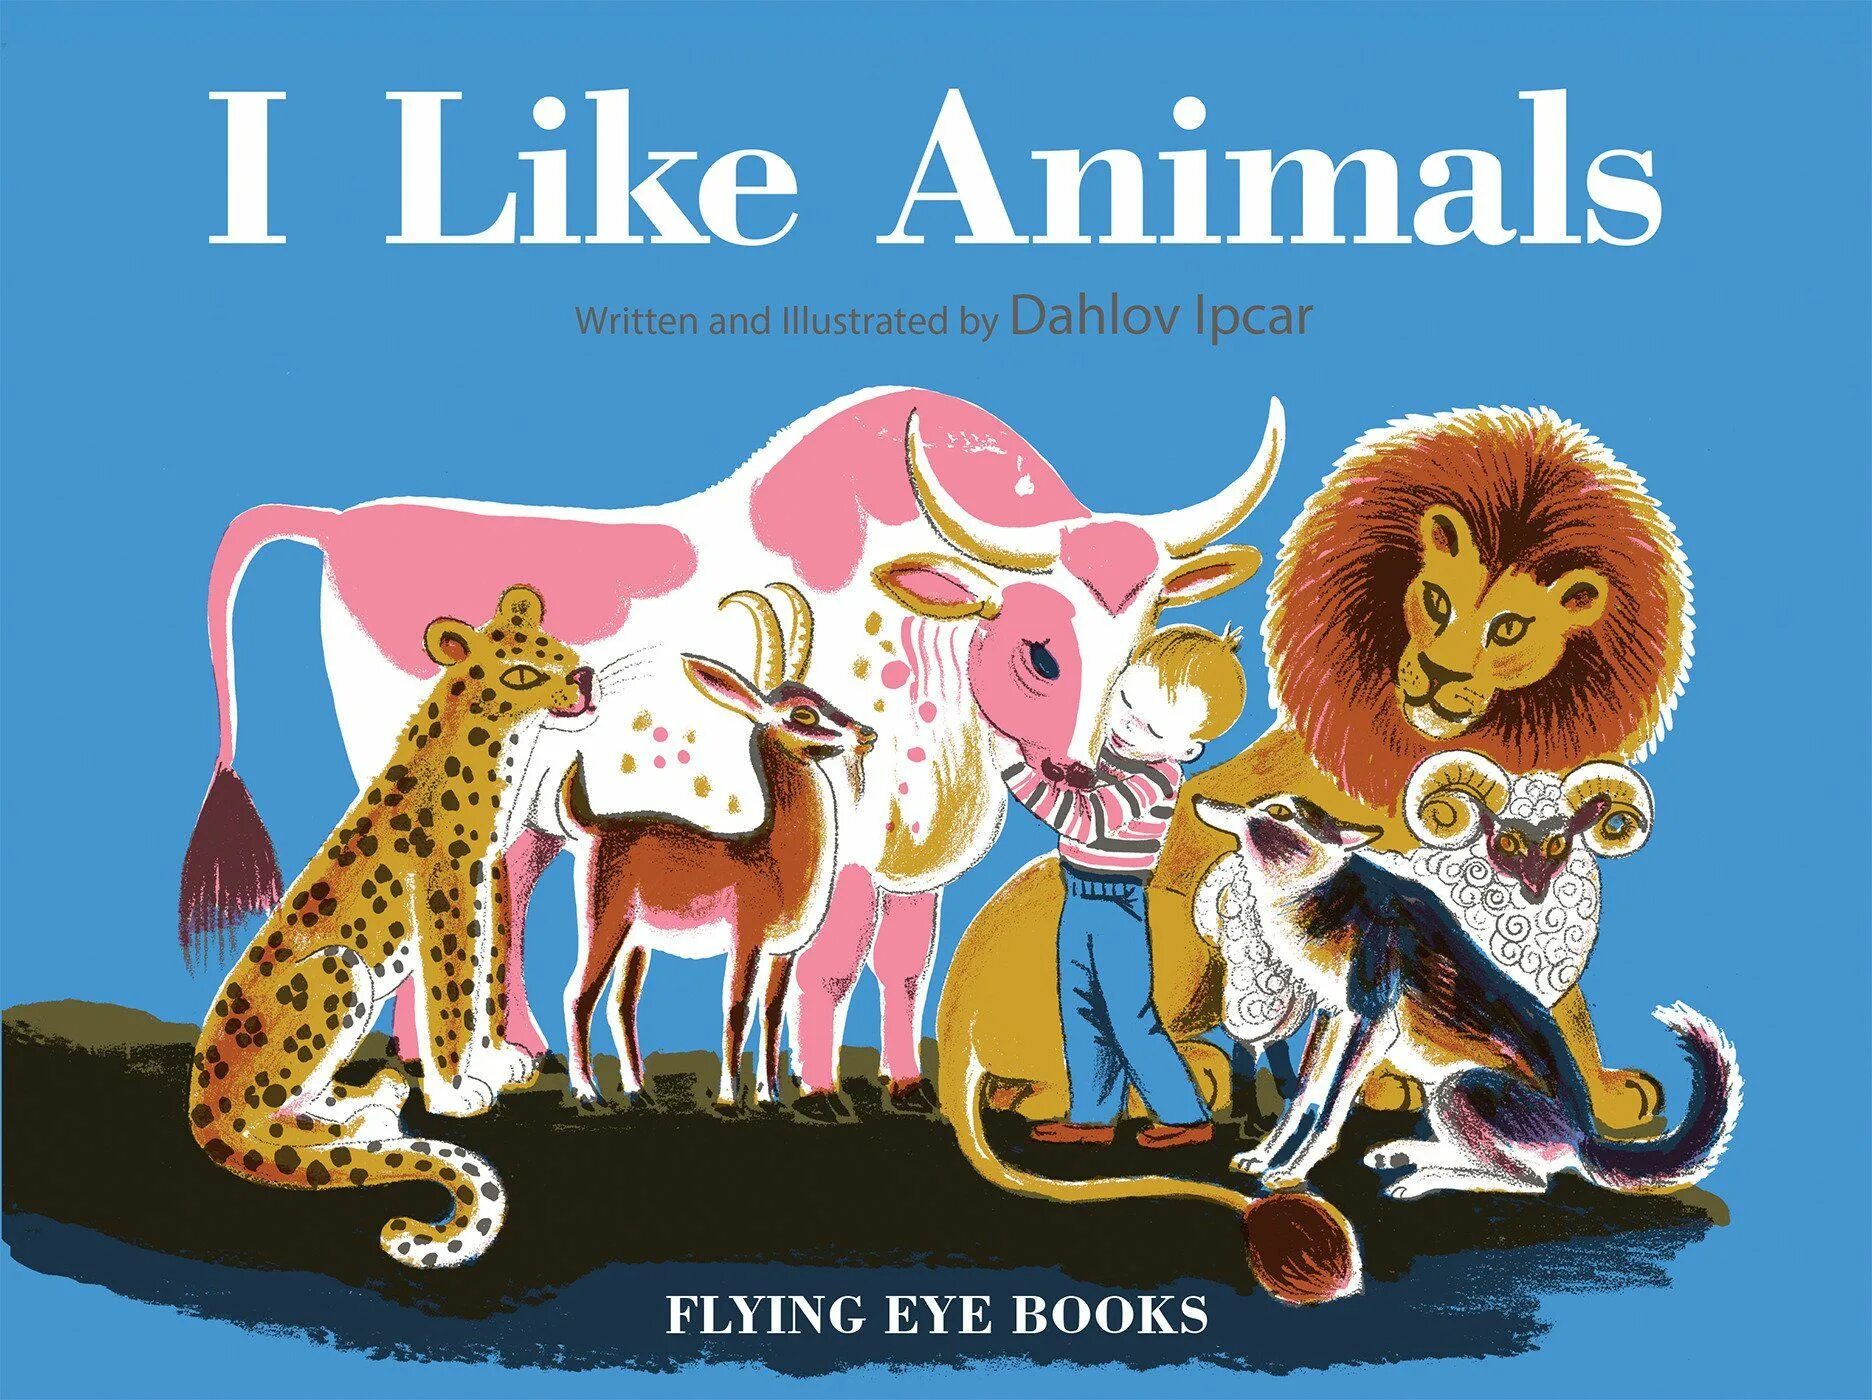 Do they like animals. Лайк Энималс. Животные в детских книжках. Animals i like. Дизайн детских книг.